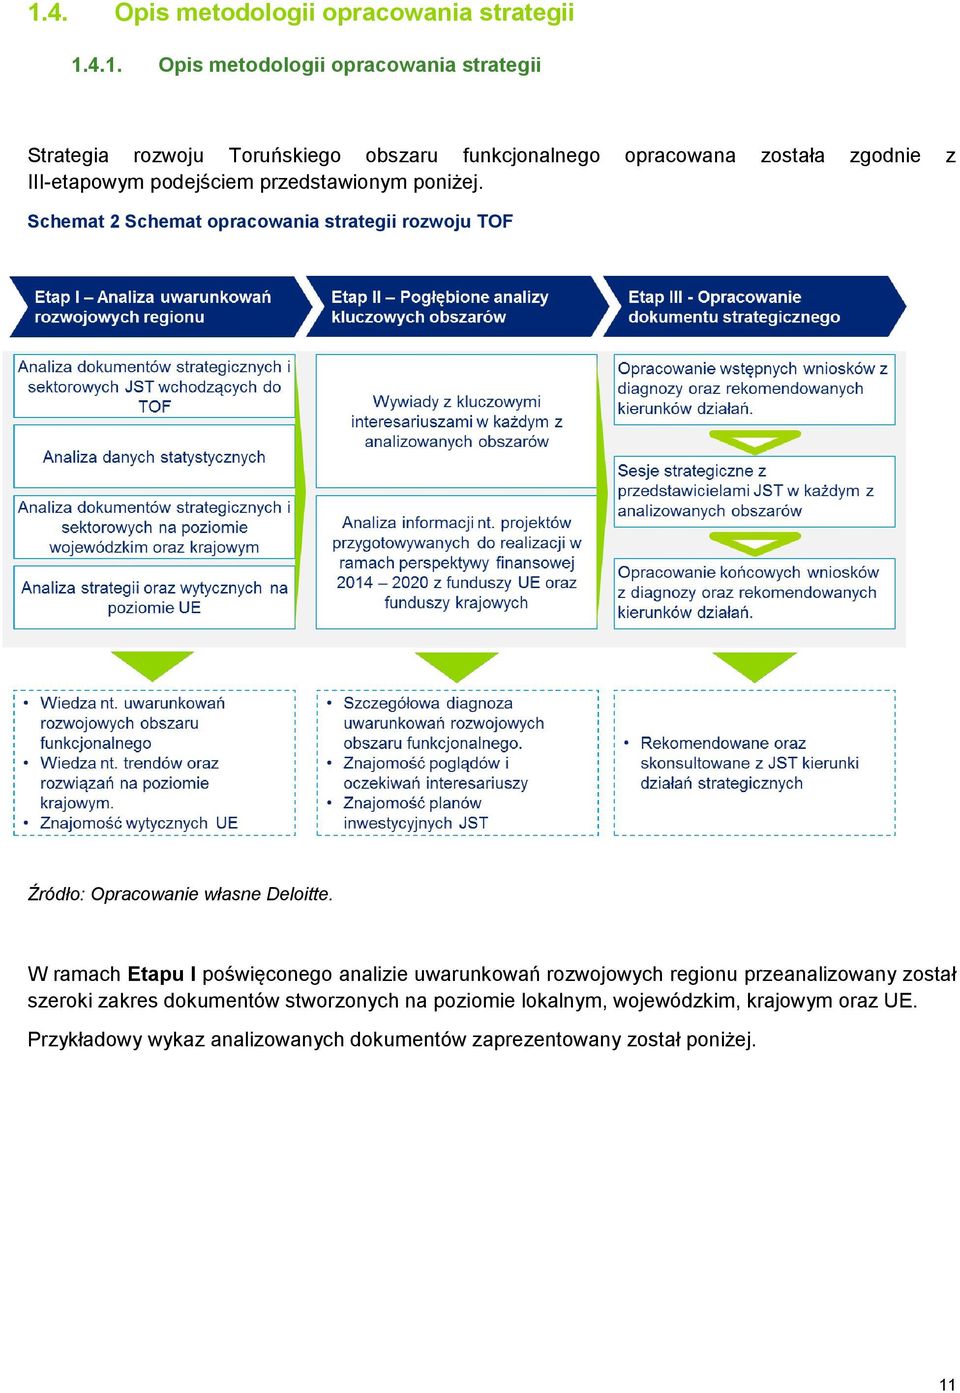 Schemat 2 Schemat opracowania strategii rozwoju TOF Źródło: Opracowanie własne Deloitte.